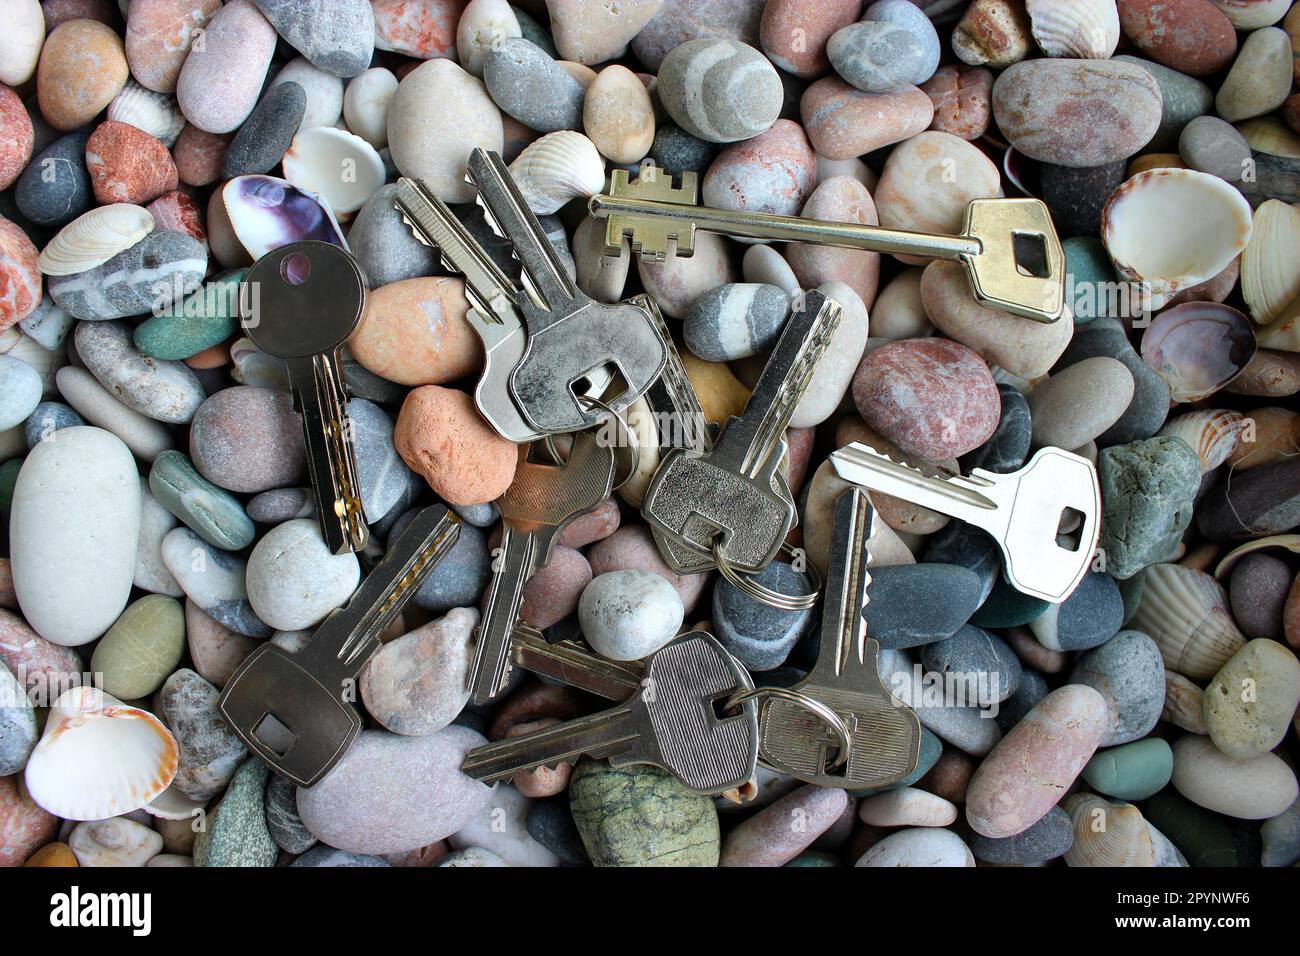 Un modèle de différents types de clés des serrures disposées sur des pierres vue de dessus Banque D'Images